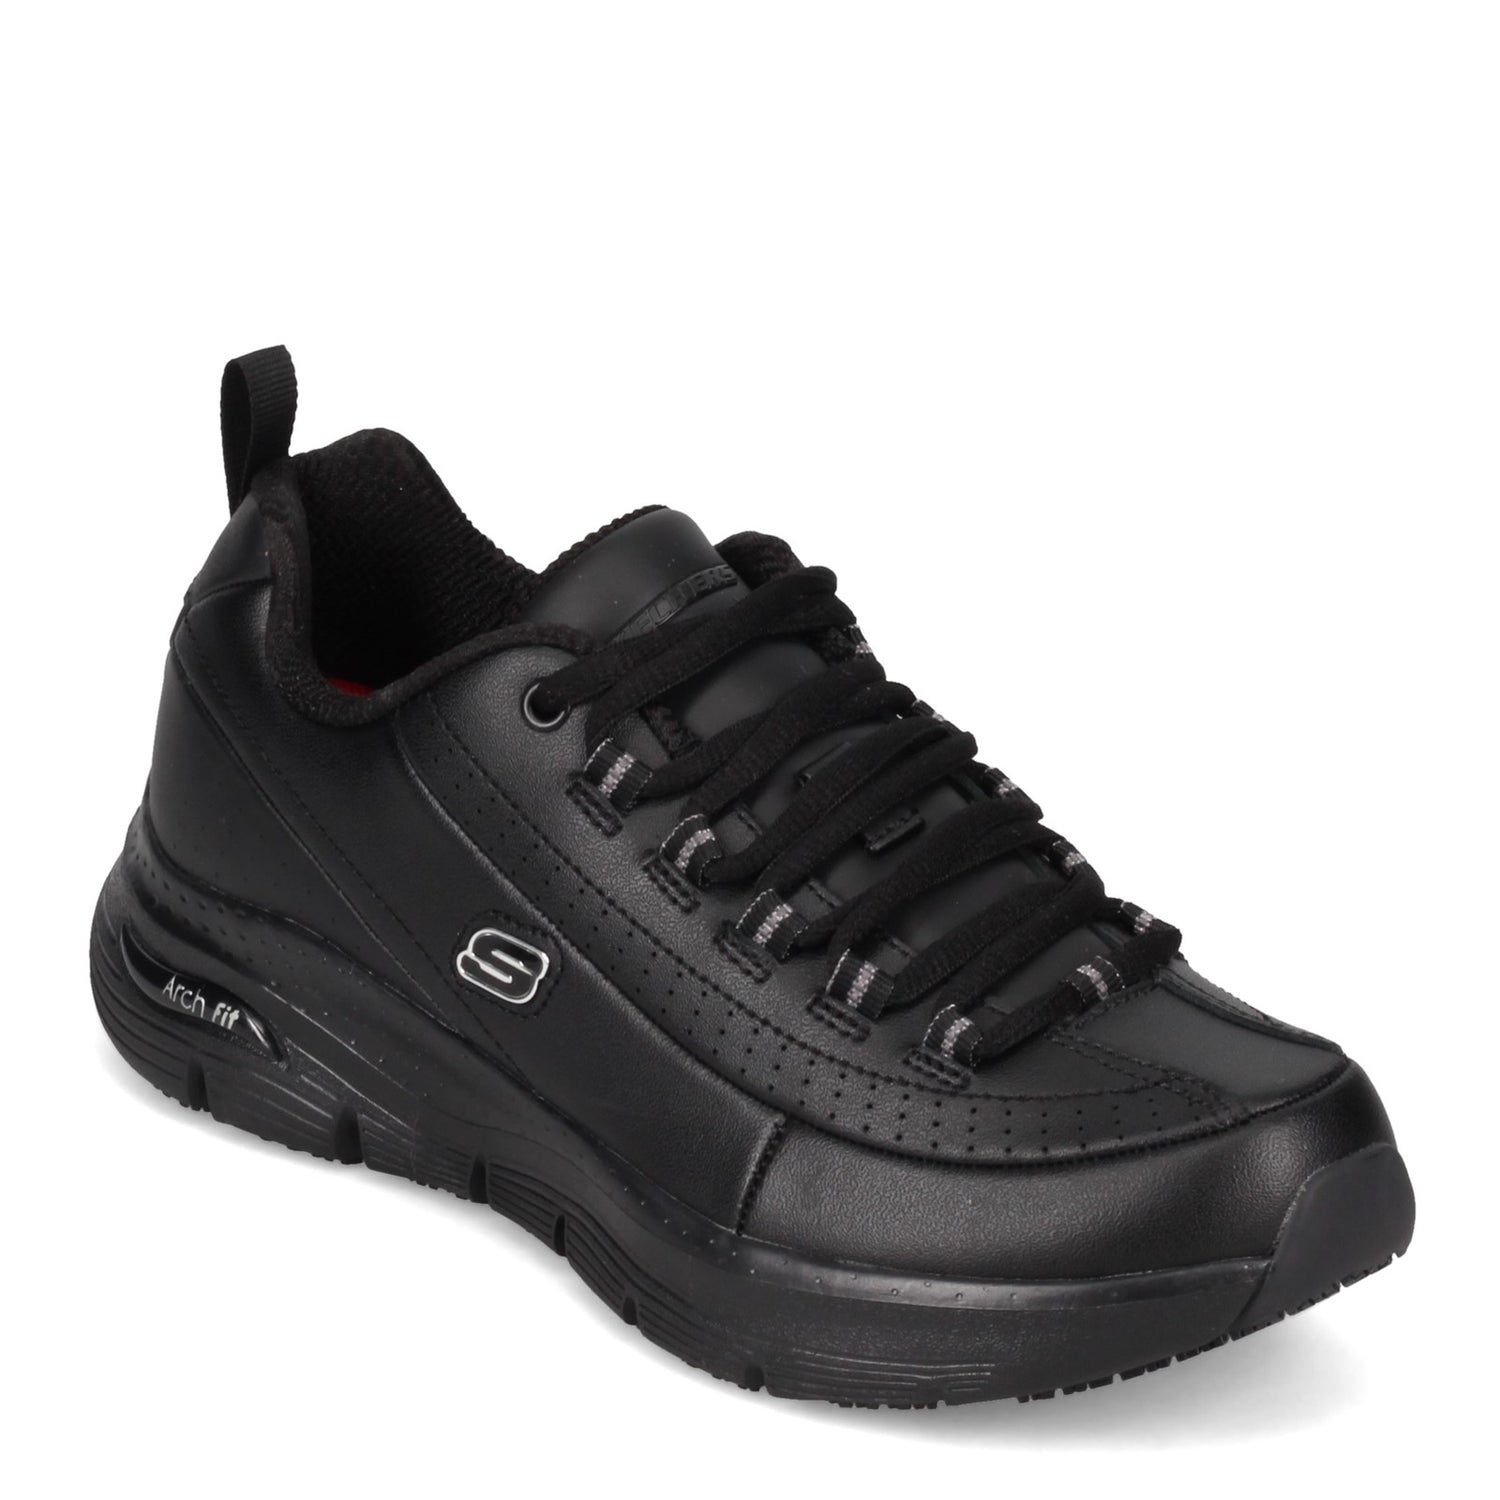 Peltz Shoes  Women's Skechers Arch Fit SR - Trickell II Work Shoe BLACK 108053-BLK